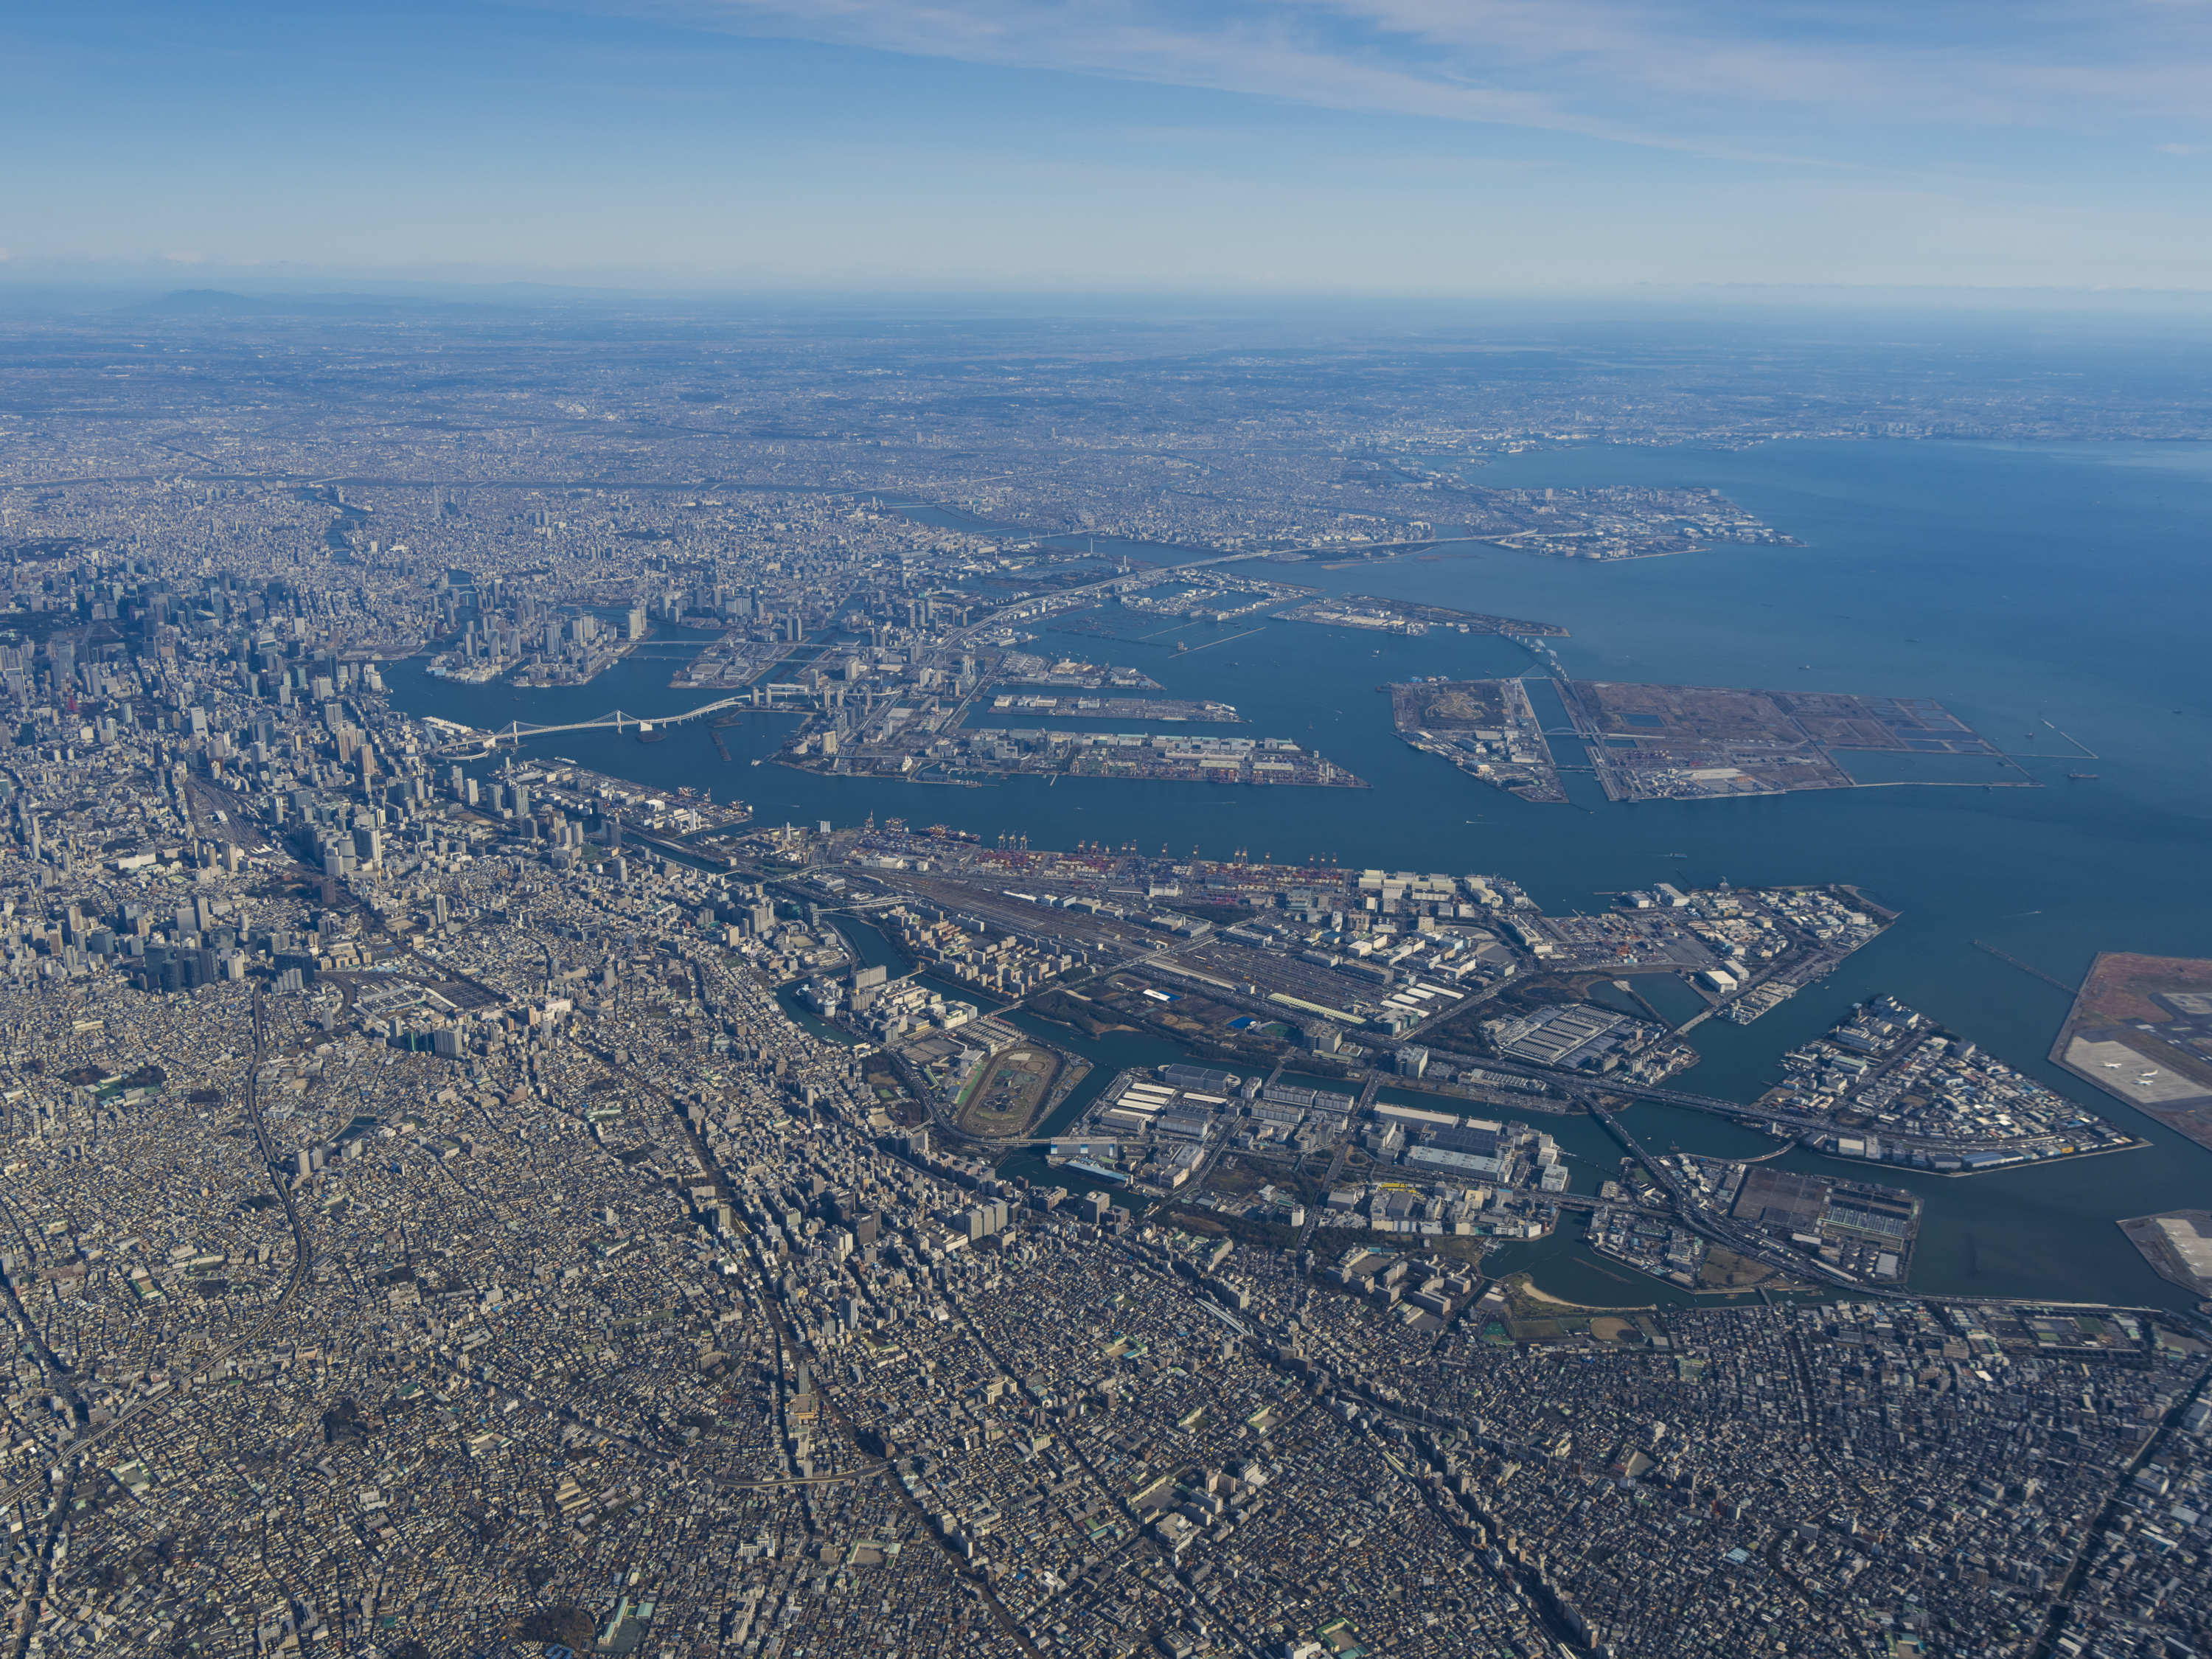 航空写真 東京都港湾局公式ホームページ